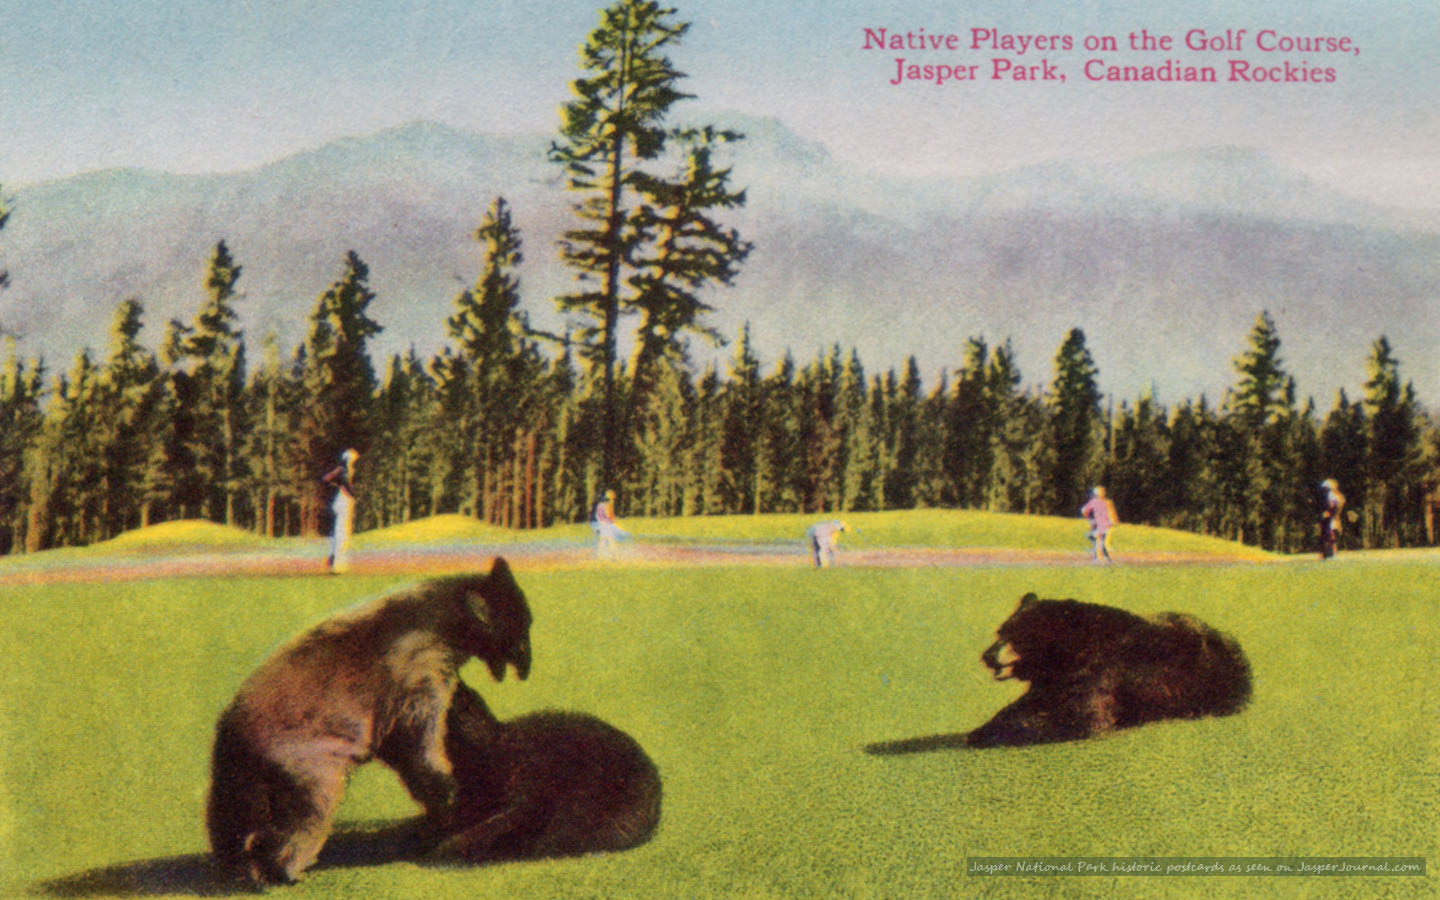 jasper-national-park-golfing-bears-1440x900.jpg